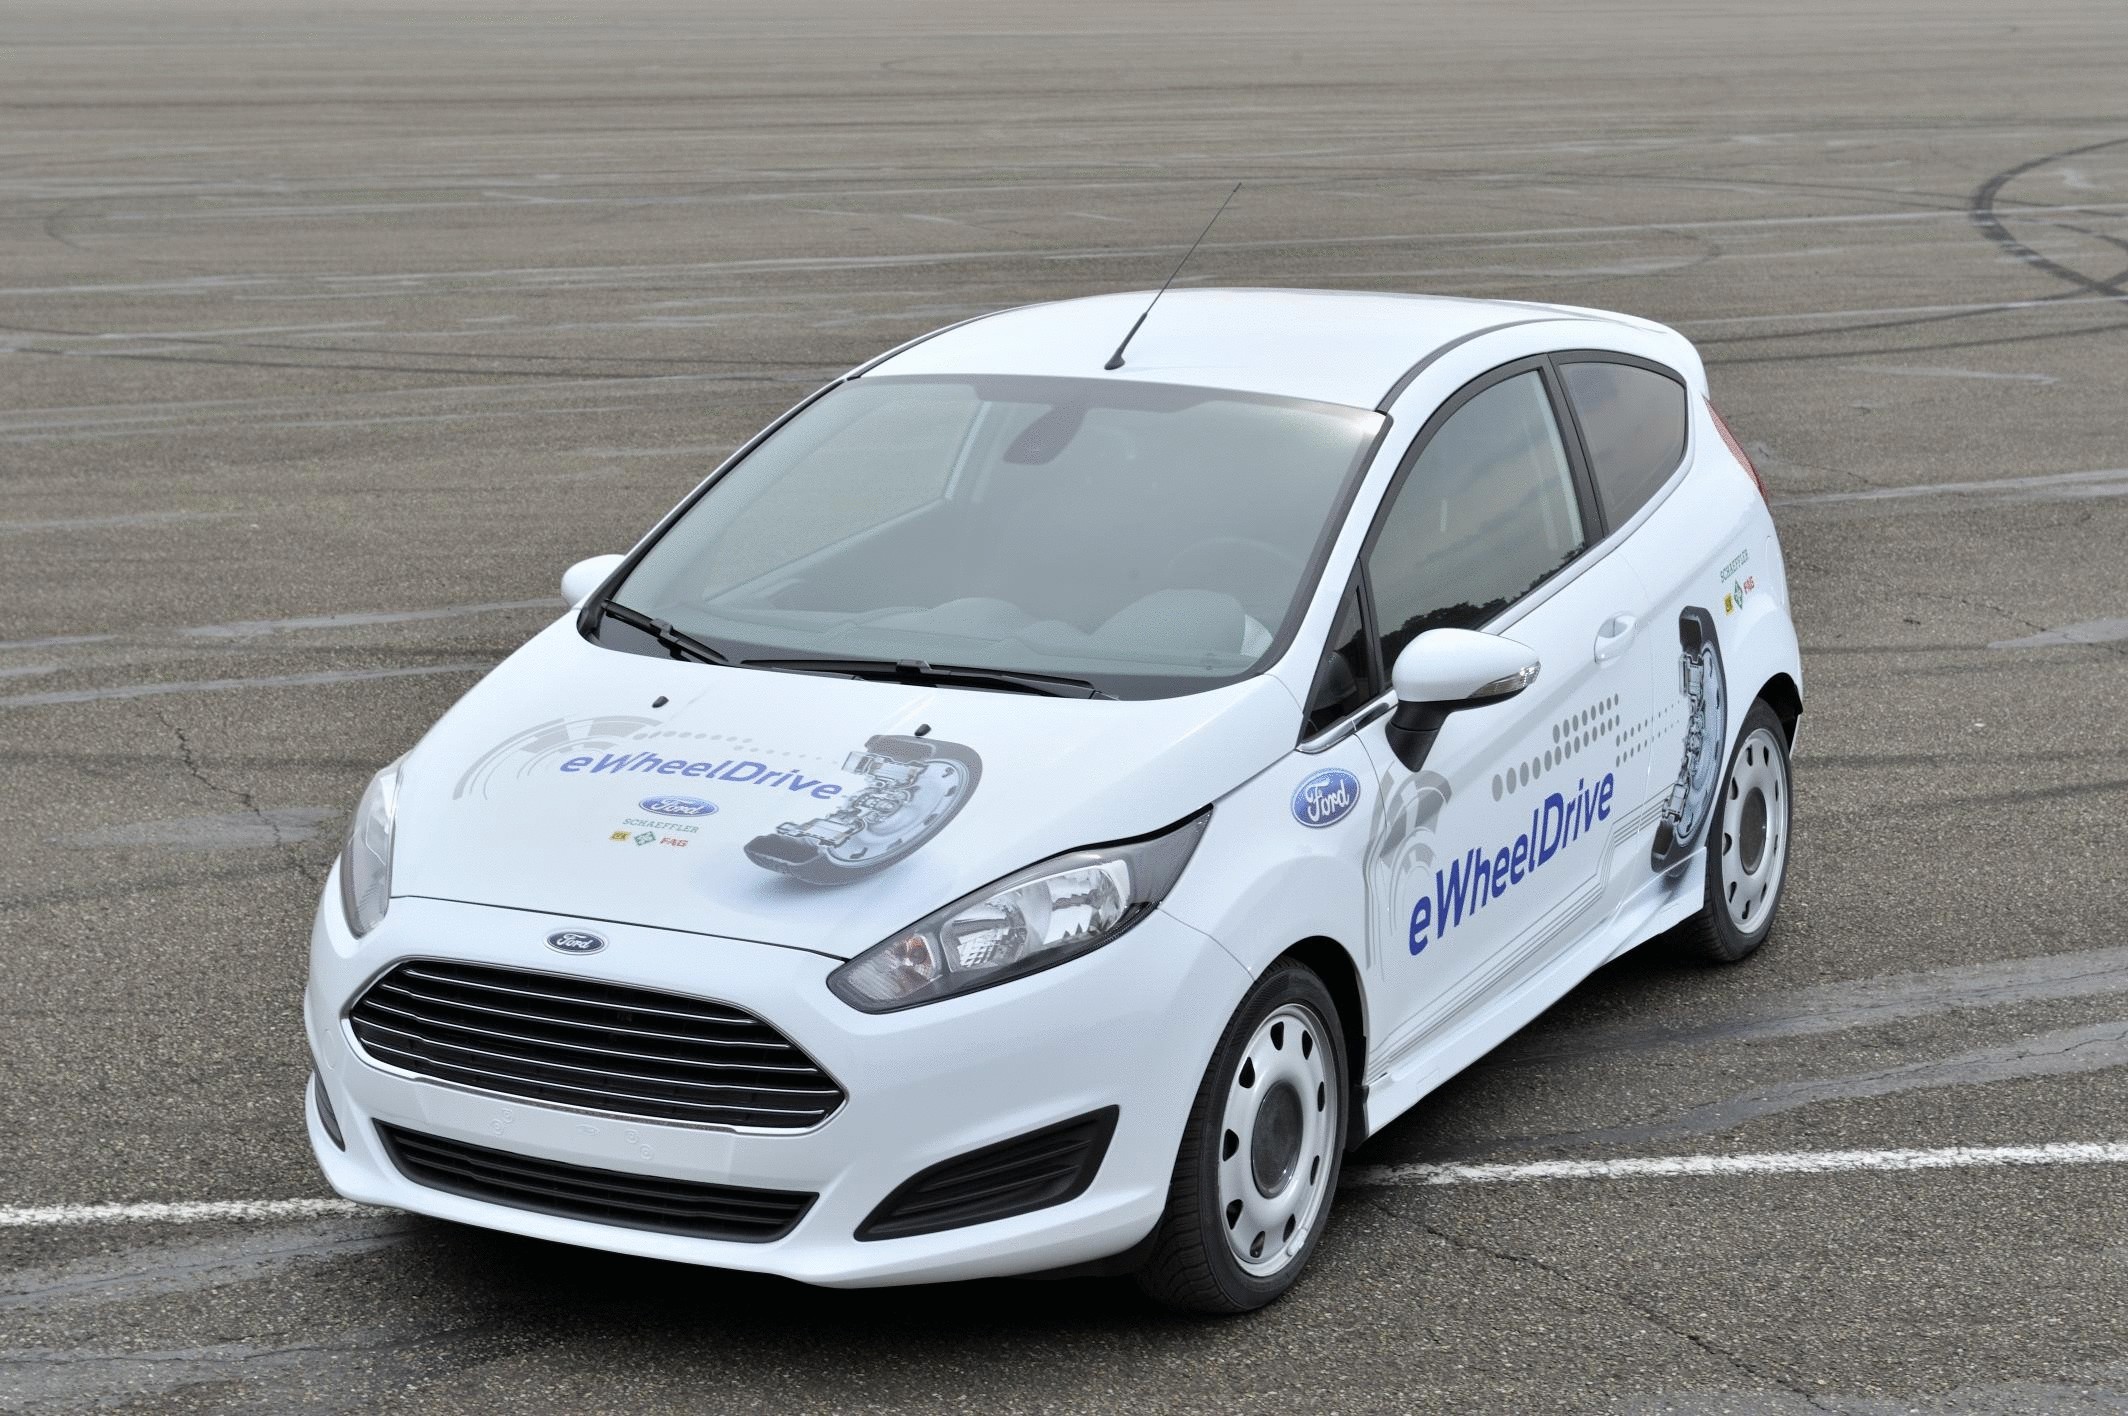 Электропривод нового поколения E-Wheel Drive на Ford Fiesta от компании Schaeffler